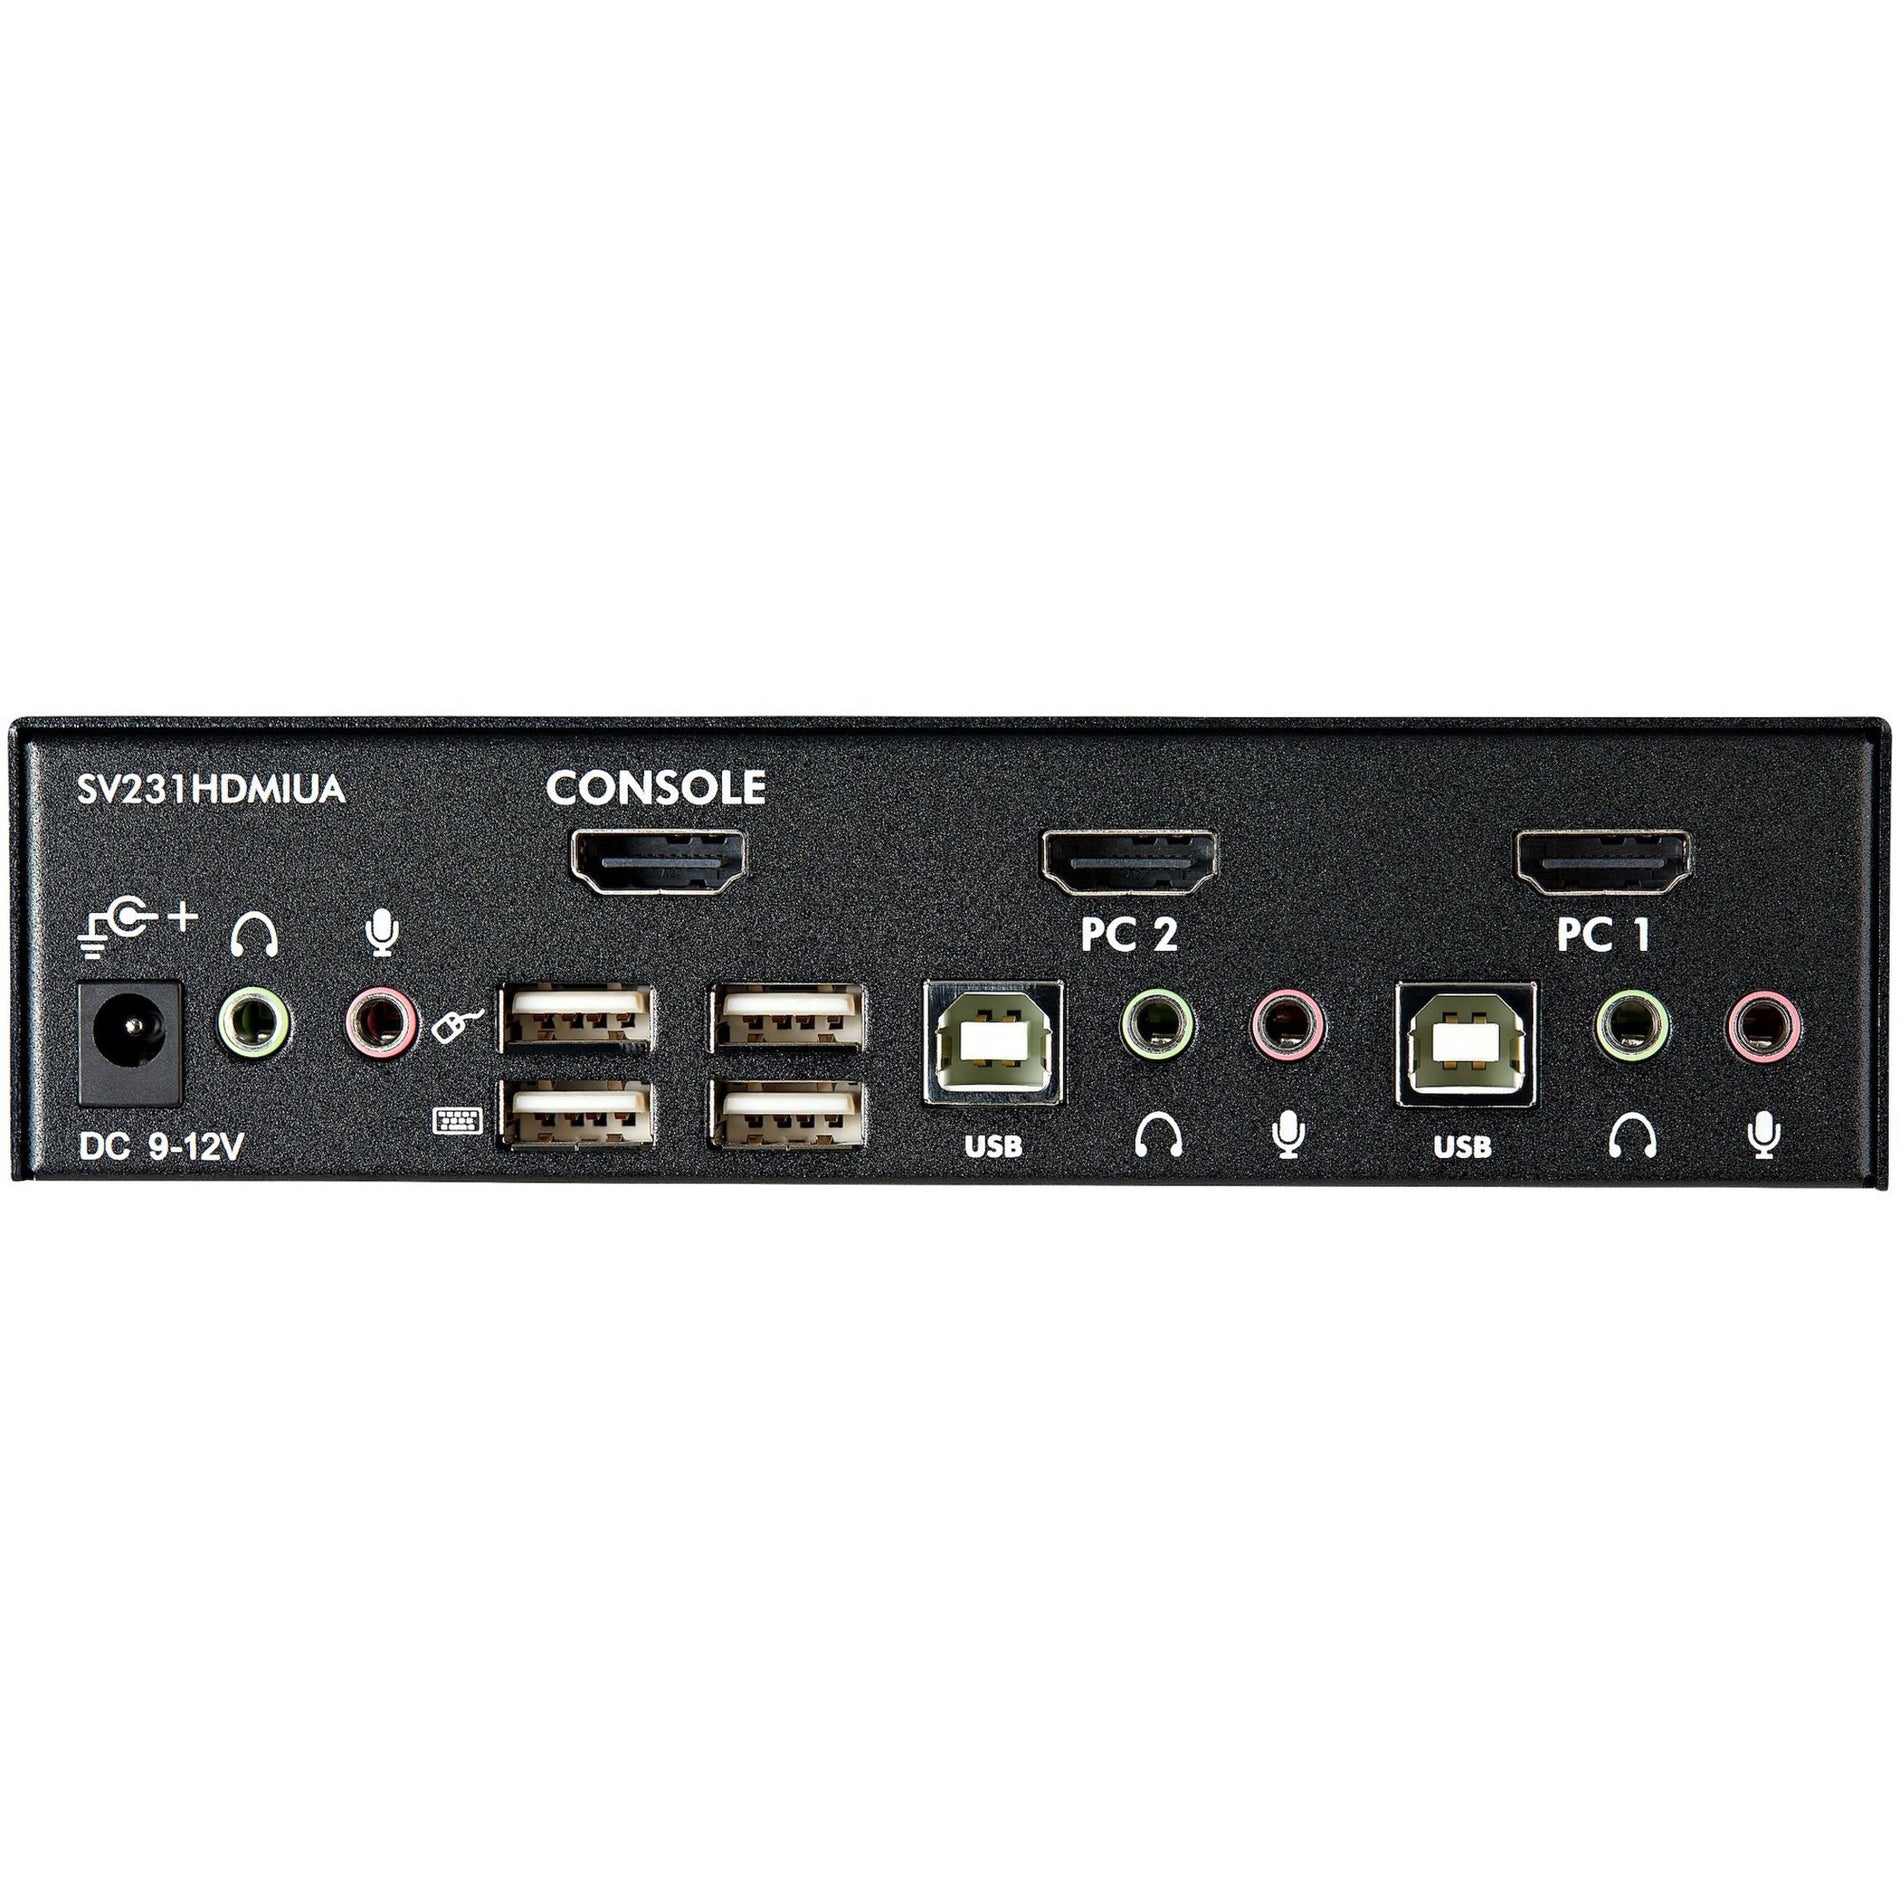 StarTech.com SV231HDMIUA 2-Port USB HDMI KVM Switch mit Audio und USB 2.0 Hub Share Peripherals and Display zwischen Spielekonsole und PC